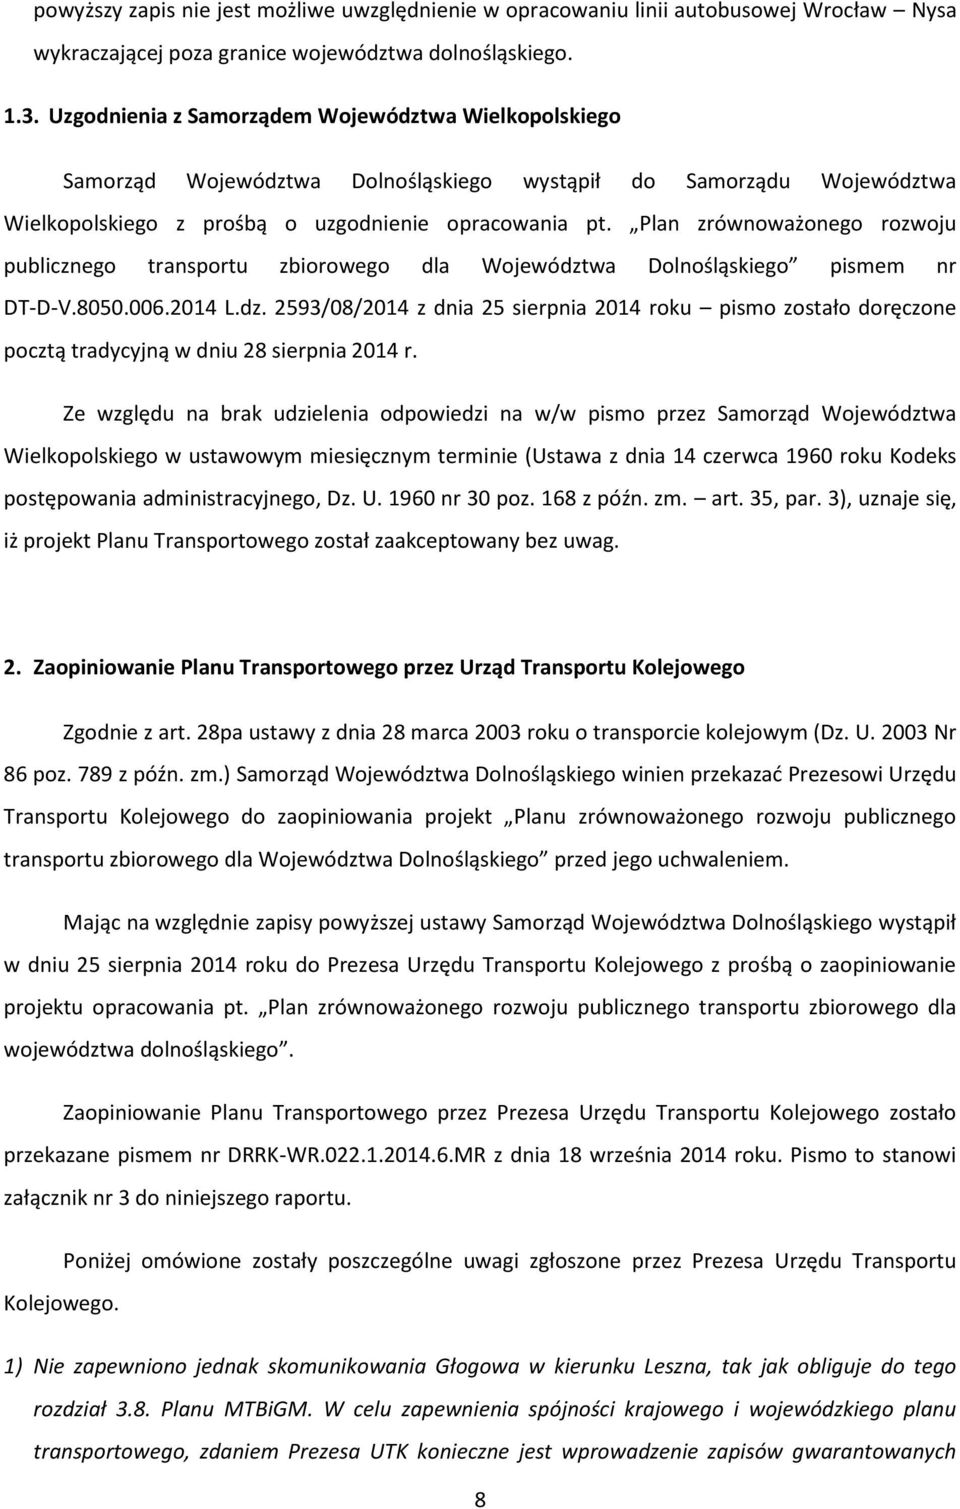 Plan zrównoważonego rozwoju publicznego transportu zbiorowego dla Województwa Dolnośląskiego pismem nr DT-D-V.8050.006.2014 L.dz. 2593/08/2014 z dnia 25 sierpnia 2014 roku pismo zostało doręczone pocztą tradycyjną w dniu 28 sierpnia 2014 r.